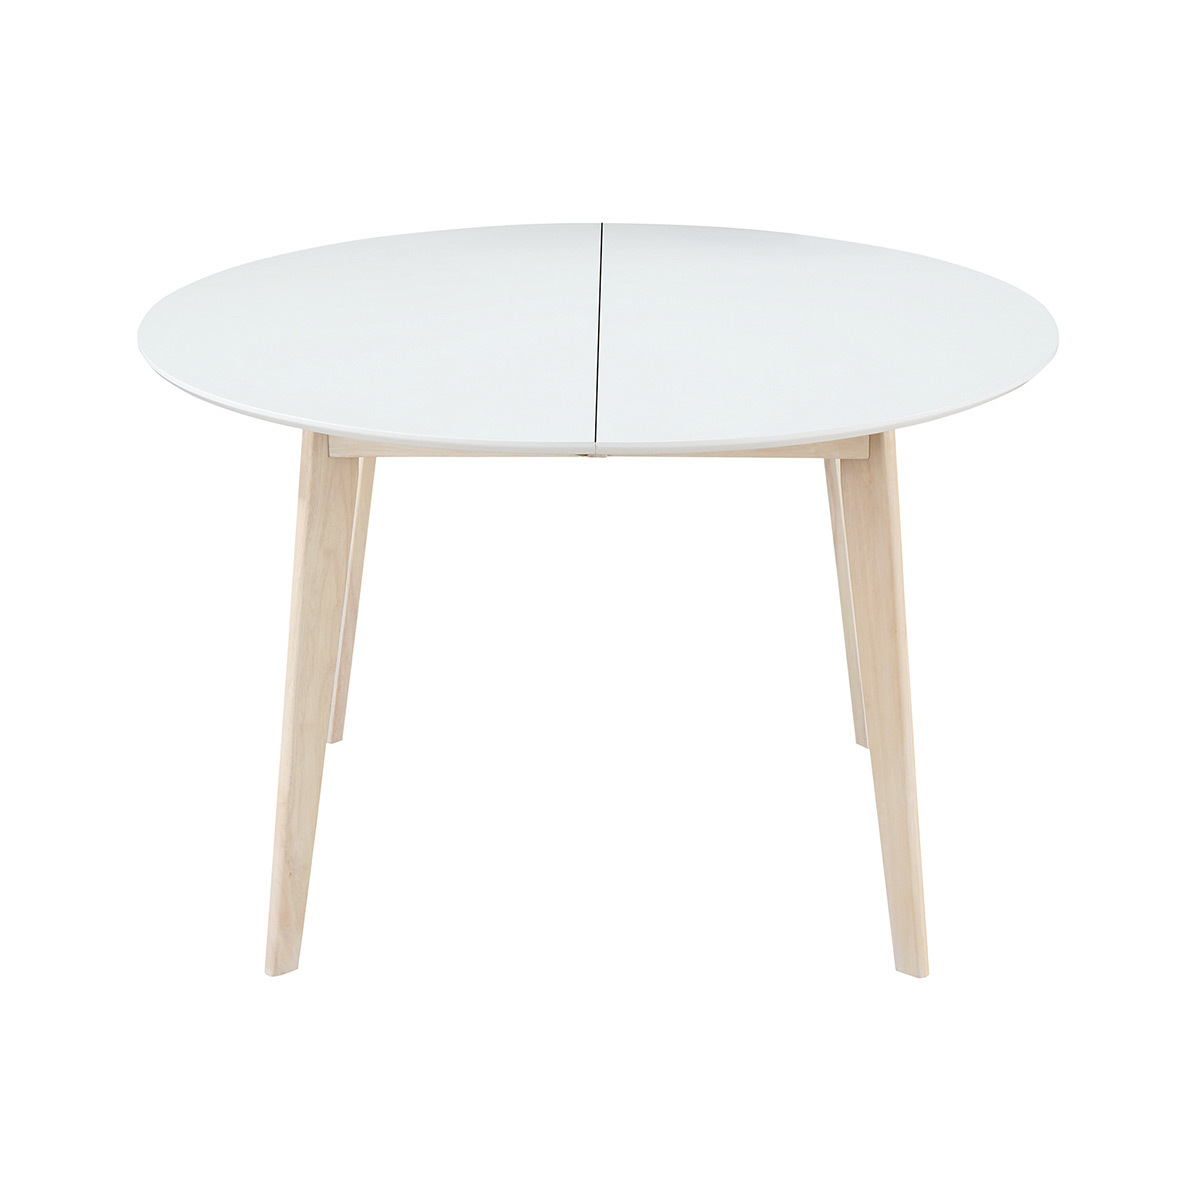 Table à manger scandinave ronde extensible blanc et bois L120-150 cm LEENA vue1